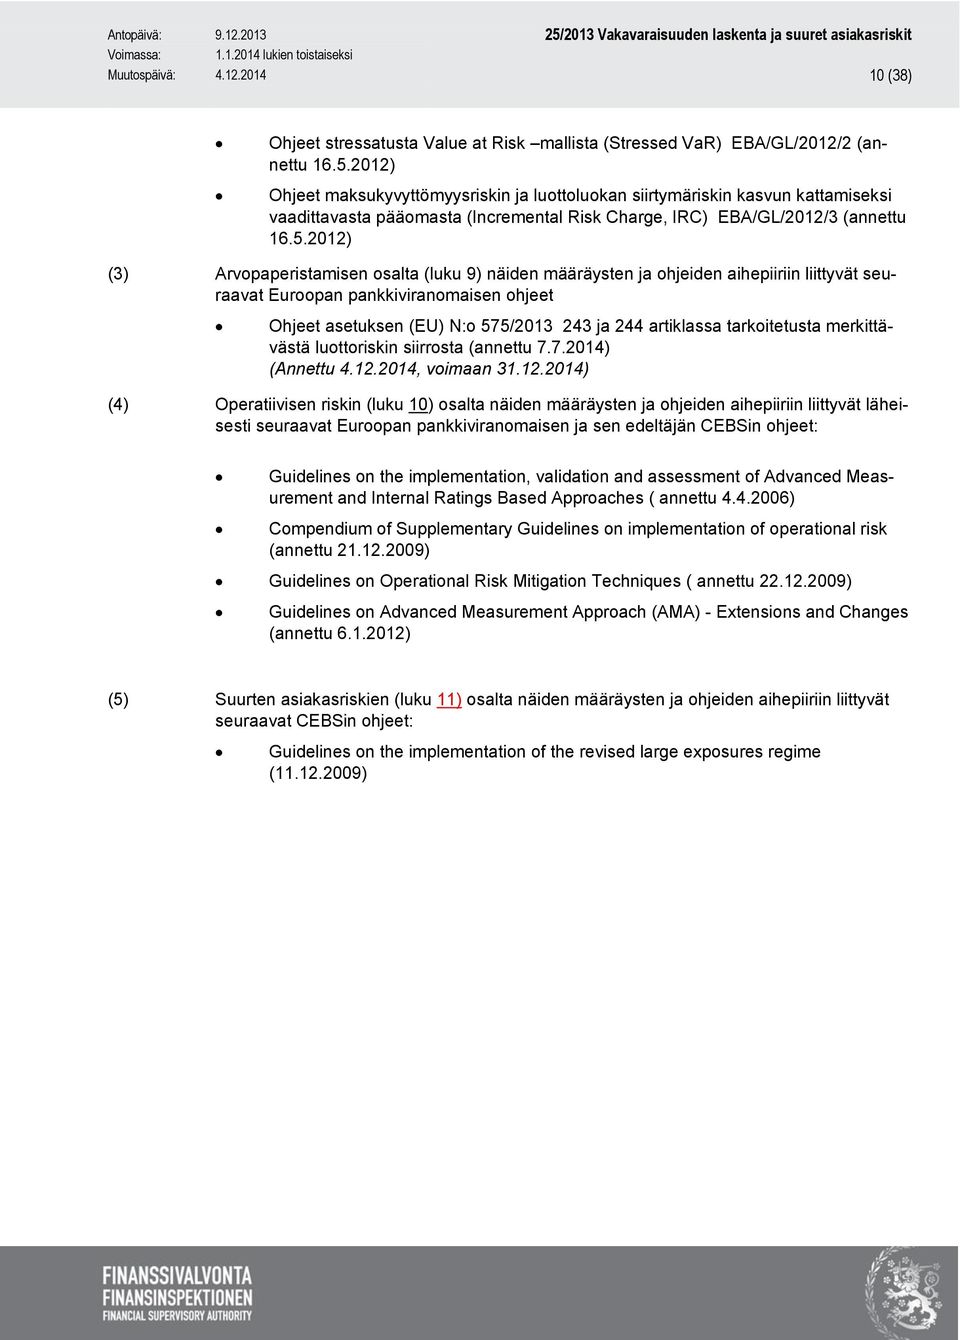 2012) (3) Arvopaperistamisen osalta (luku 9) näiden määräysten ja ohjeiden aihepiiriin liittyvät seuraavat Euroopan pankkiviranomaisen ohjeet Ohjeet asetuksen (EU) N:o 575/2013 243 ja 244 artiklassa